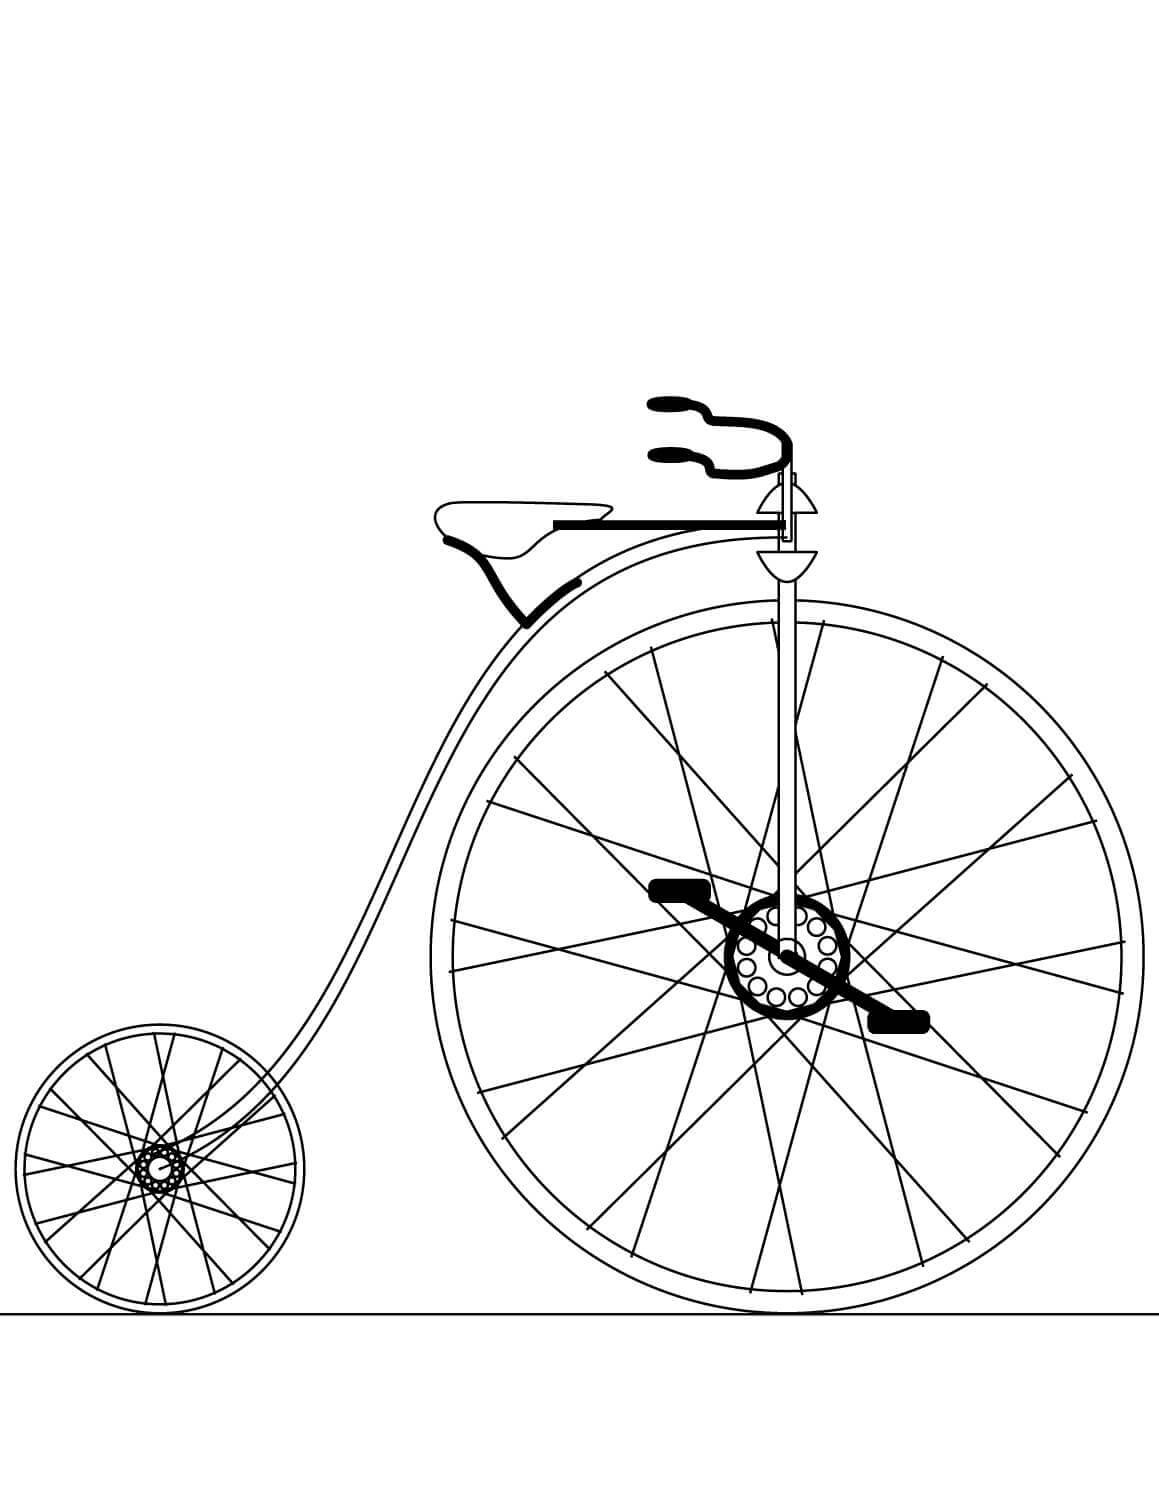 Tranh Tô Màu Xe đạp Cho Bé | Minh họa AI Tải xuống miễn phí - Pikbest